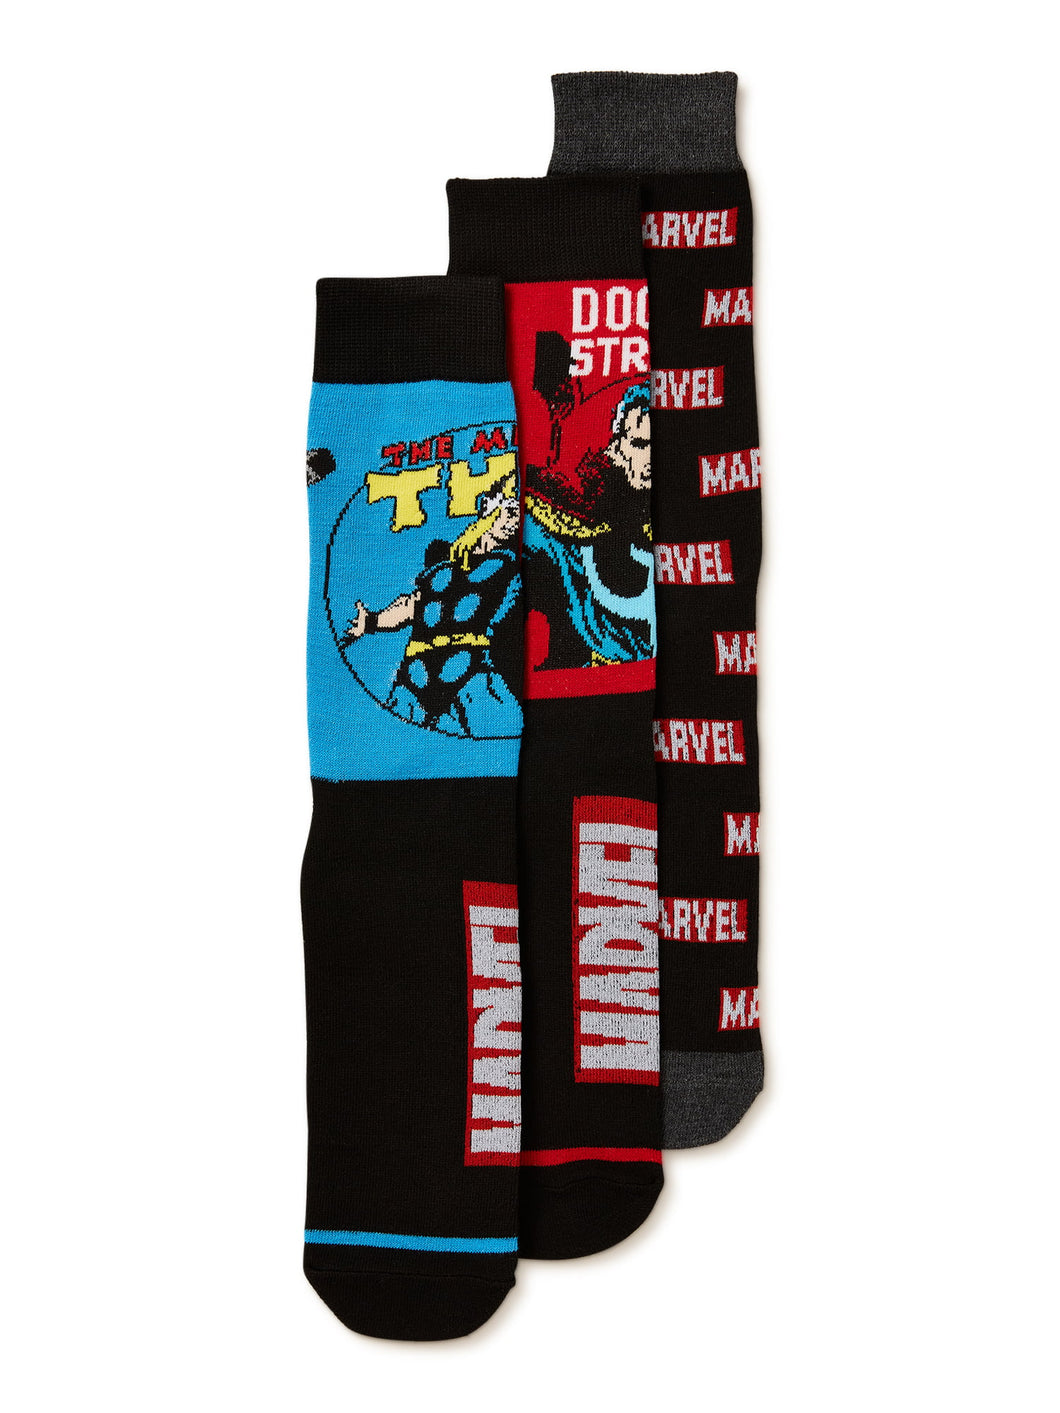 Avengers Men's Marvel Socks, 3-Pack